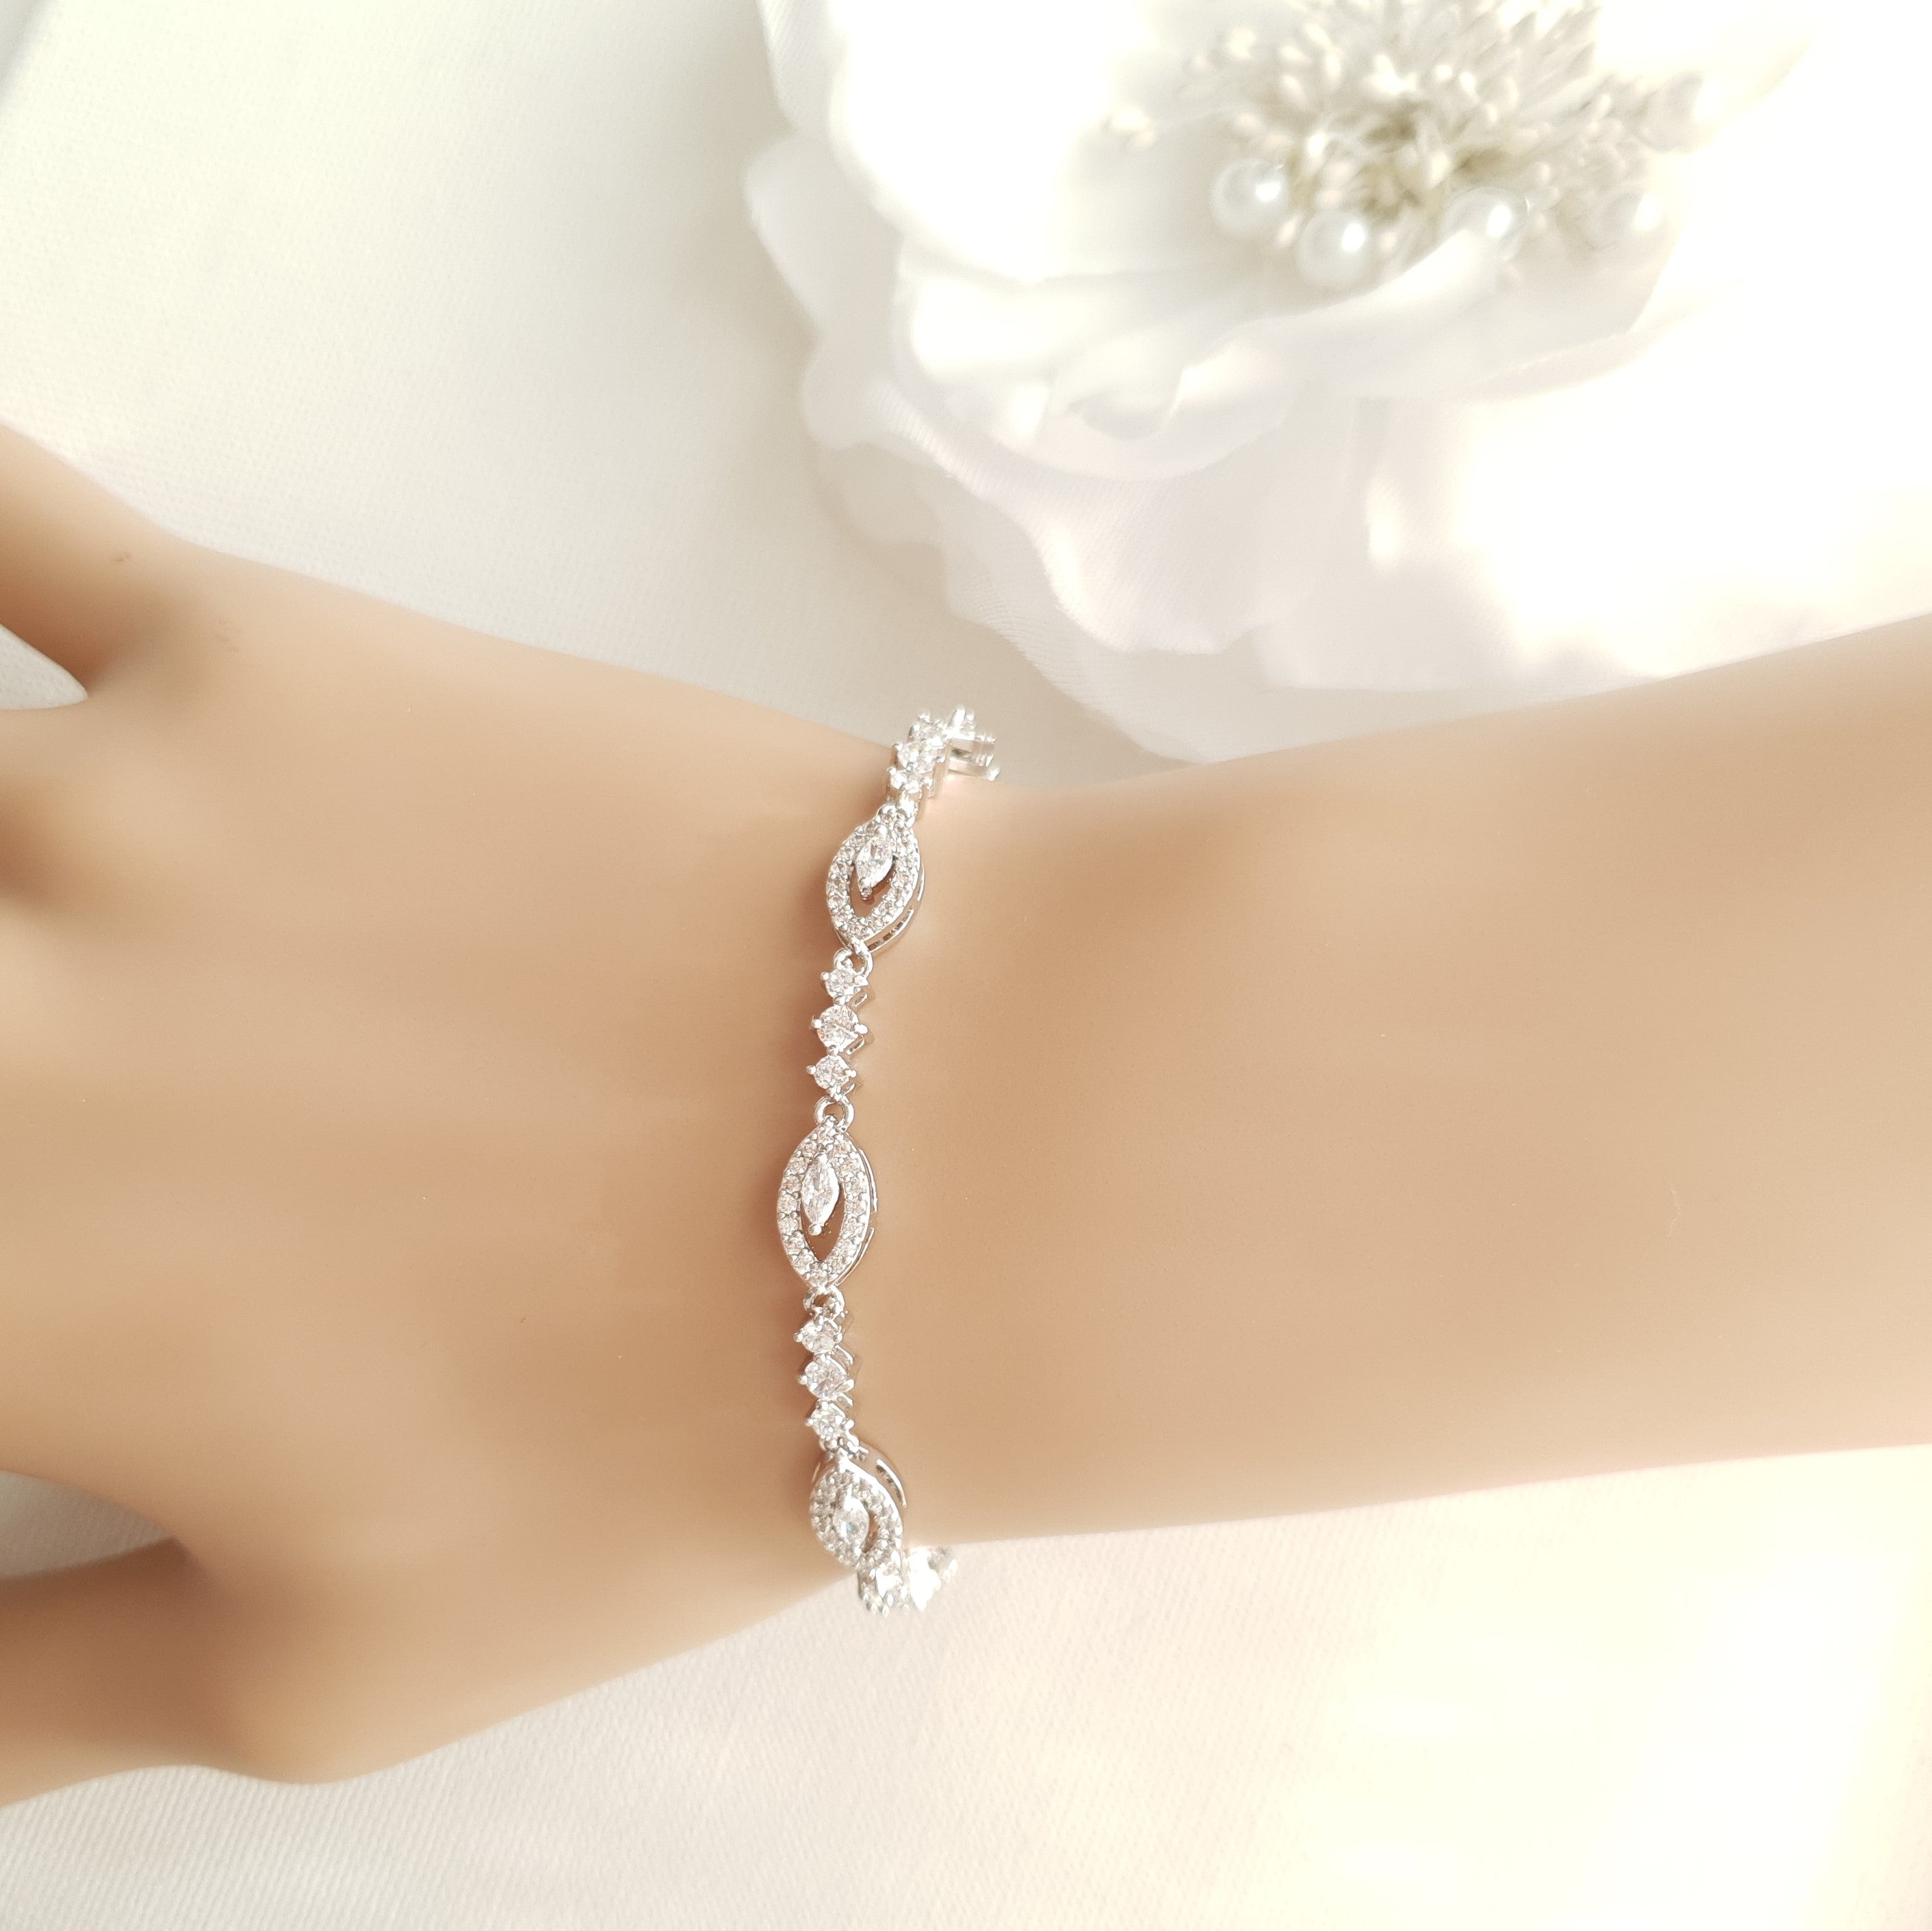 Buy Zircon Sterling Silver Bracelet Online | FableStreet